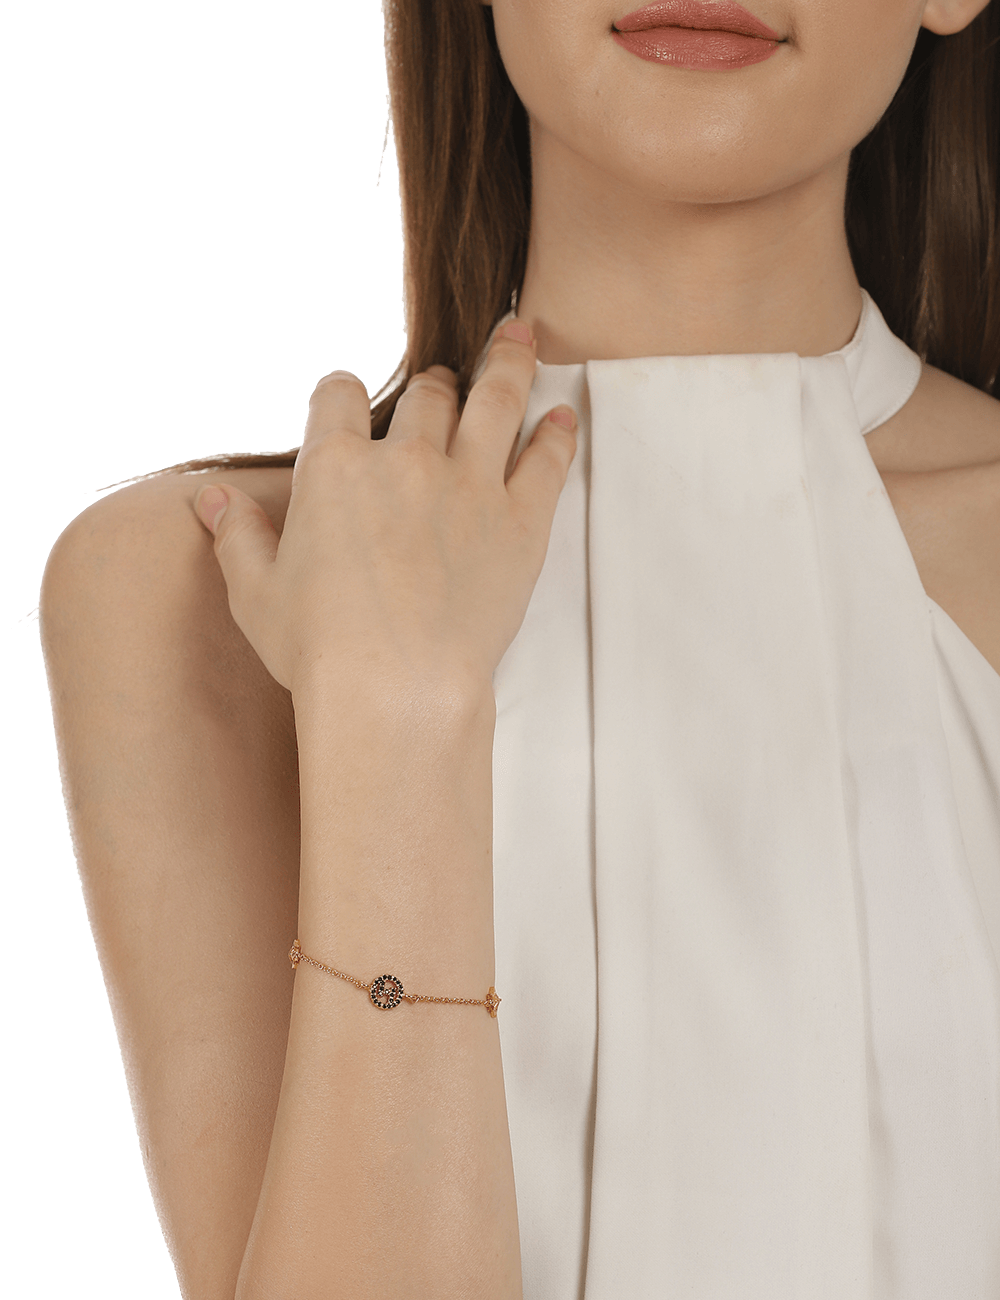 top designer bracelets to buy｜TikTok Search